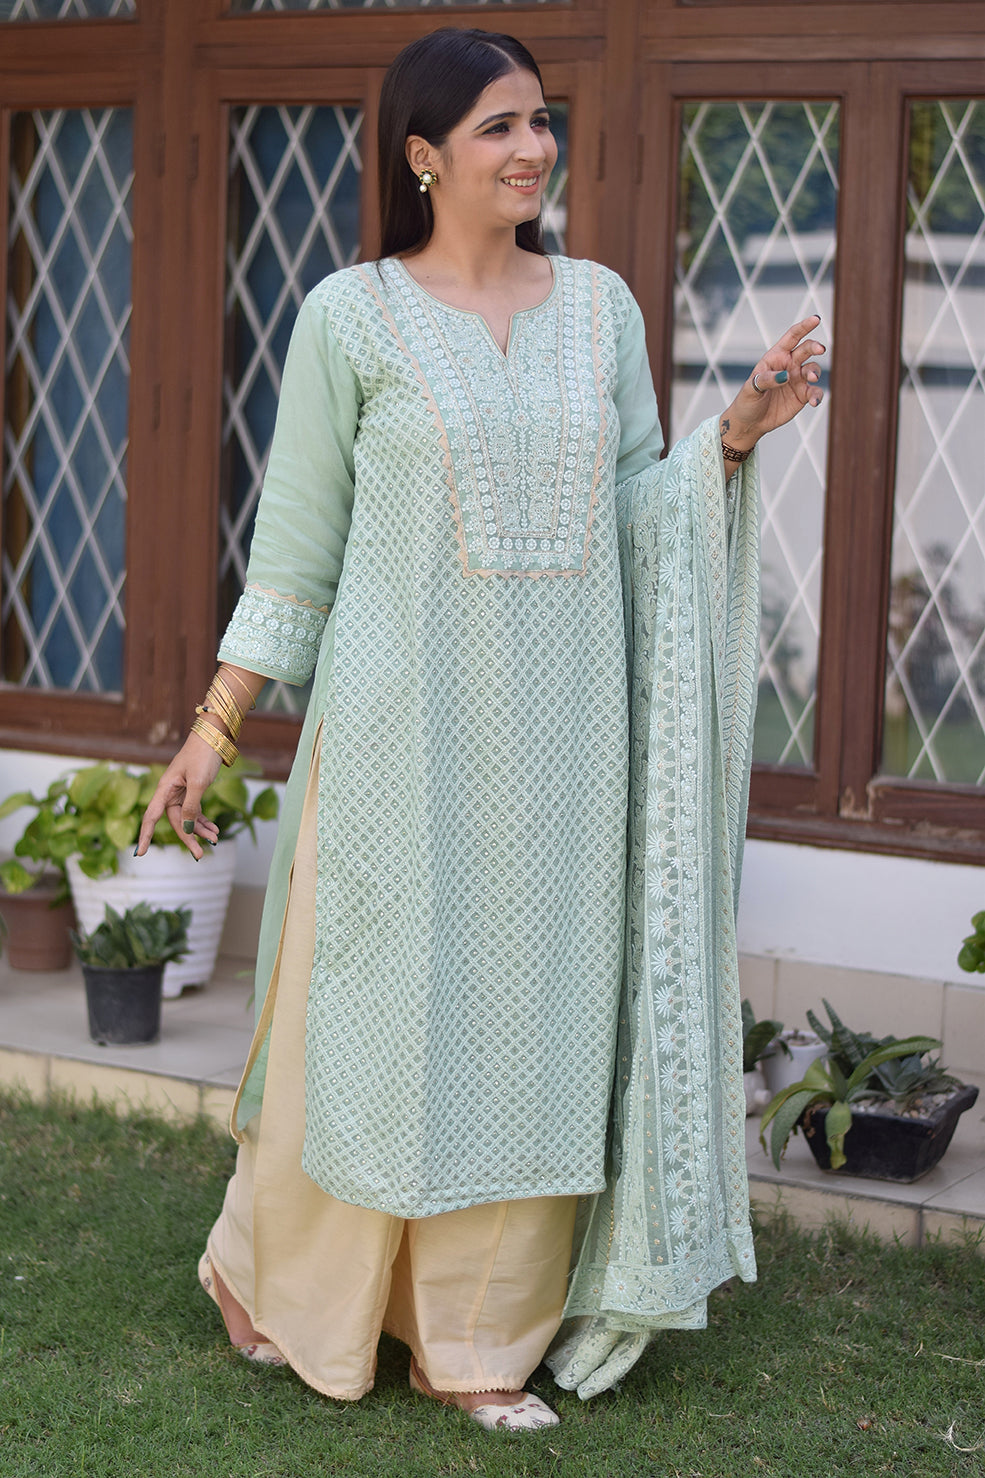 An elegant Indian lady dressed in a green chikankari kurta set.